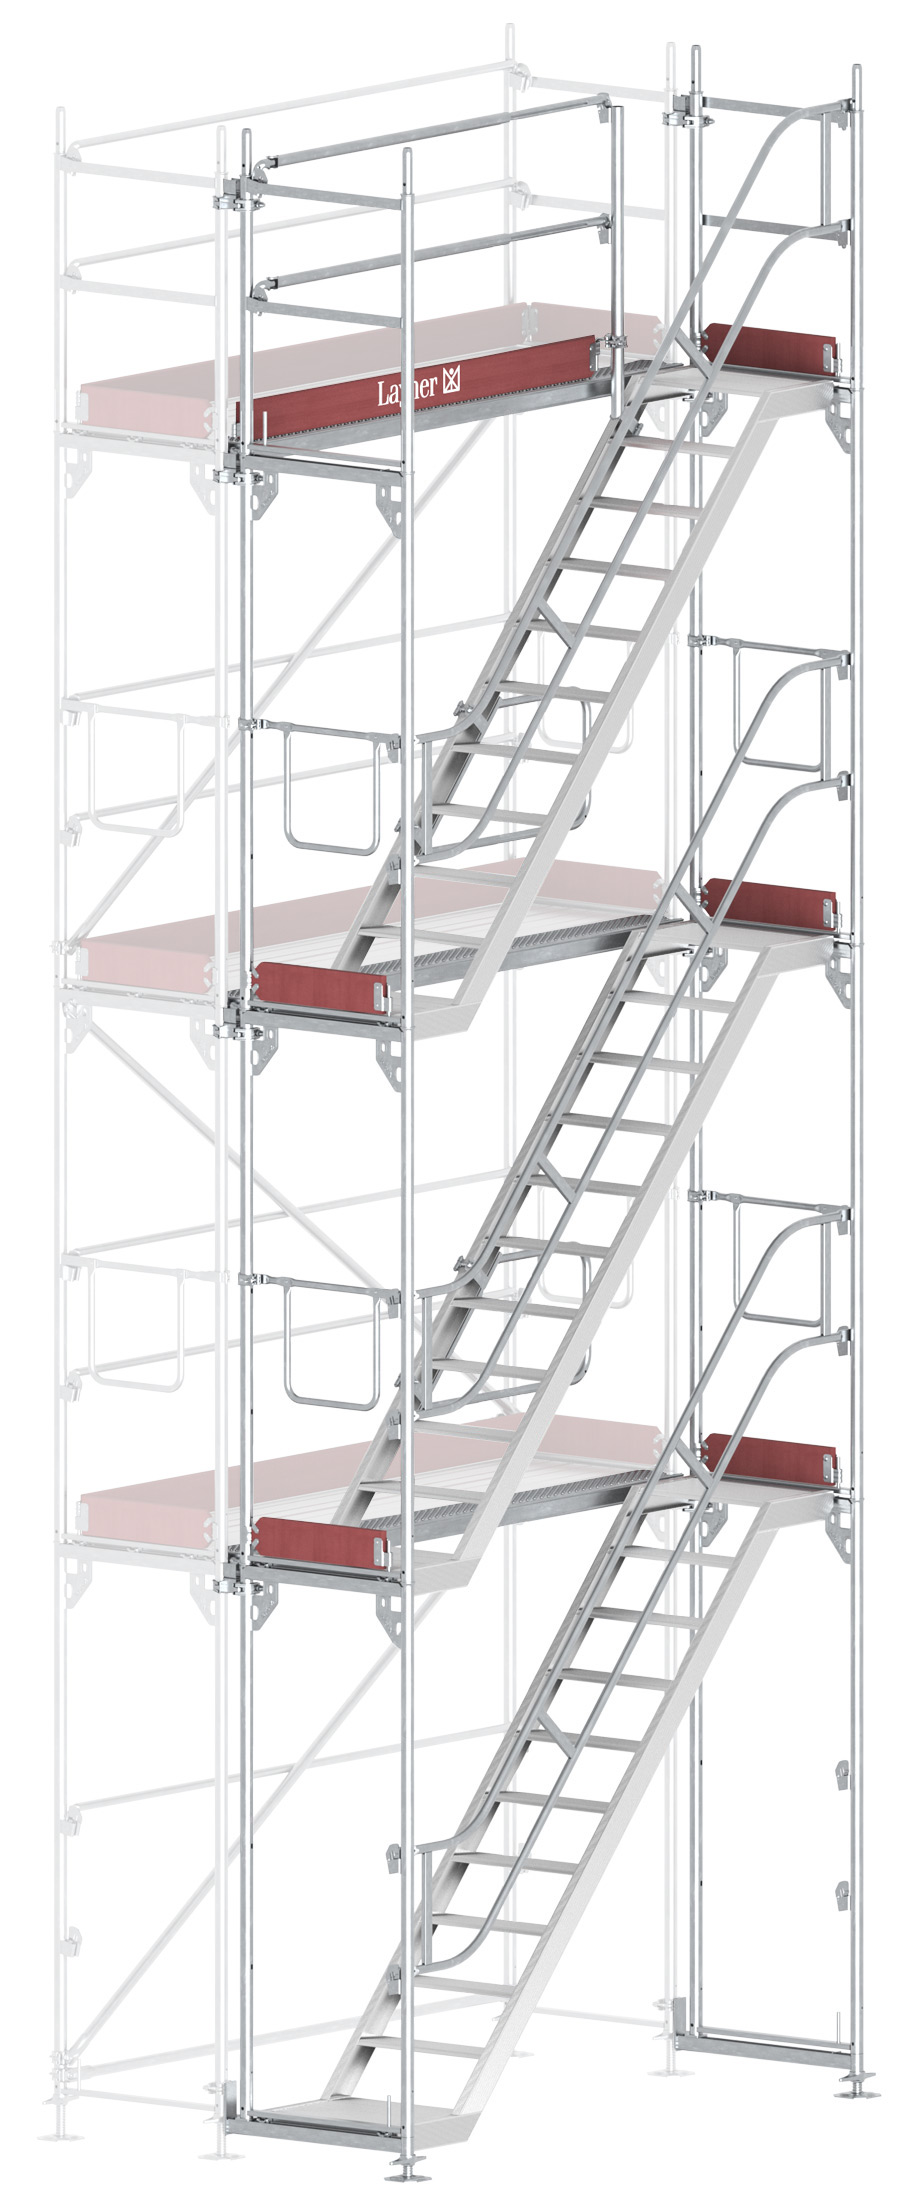 Layher Blitz Treppenturm-Vorbau Stahl - 2,57 x 6,20 m Erweiterung Treppenaufstieg nach TRBS 2121-2 für Layher Fassadengerüst (LG-1753-0600-VS) Bild-01